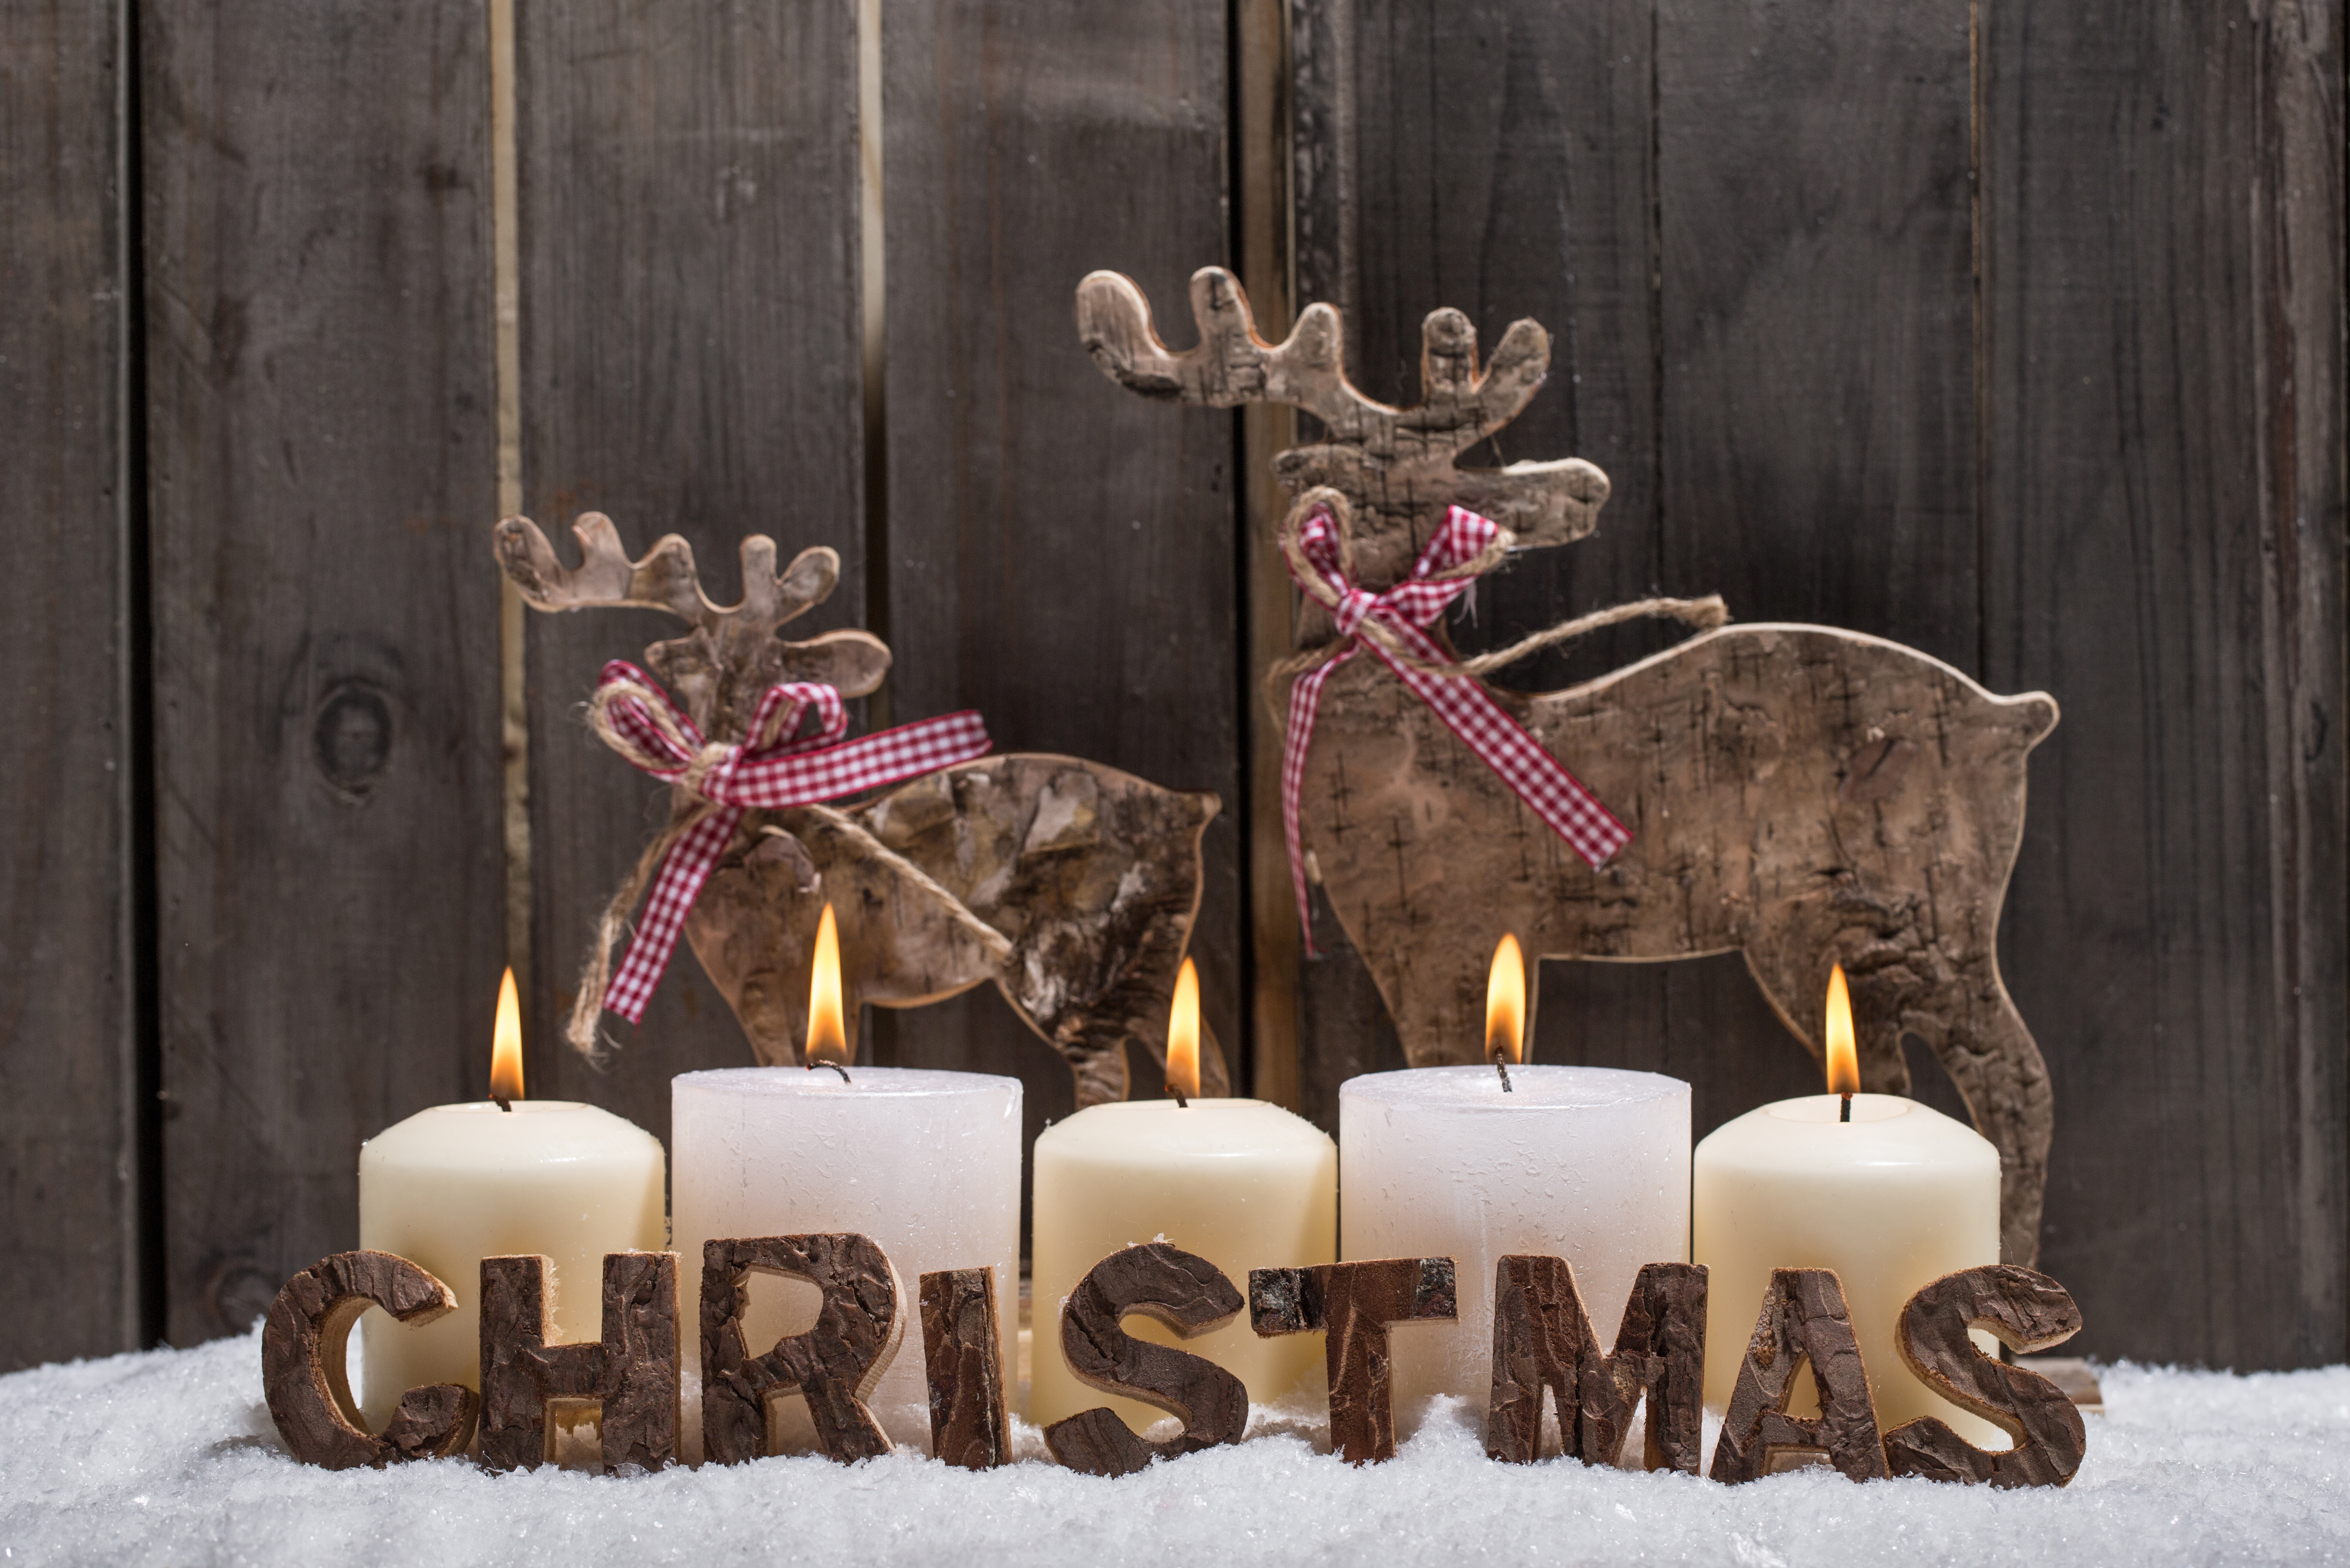 Nếu bạn yêu thích một mùa Giáng Sinh ấm áp và cổ điển thì hãy xem hình ảnh về Rustic Christmas của chúng tôi. Với những chiếc ren xinh xắn, đèn lồng phát sáng và một không gian ấm cúng, bạn sẽ bị cuốn hút bởi sự tinh tế đến từng chi tiết.